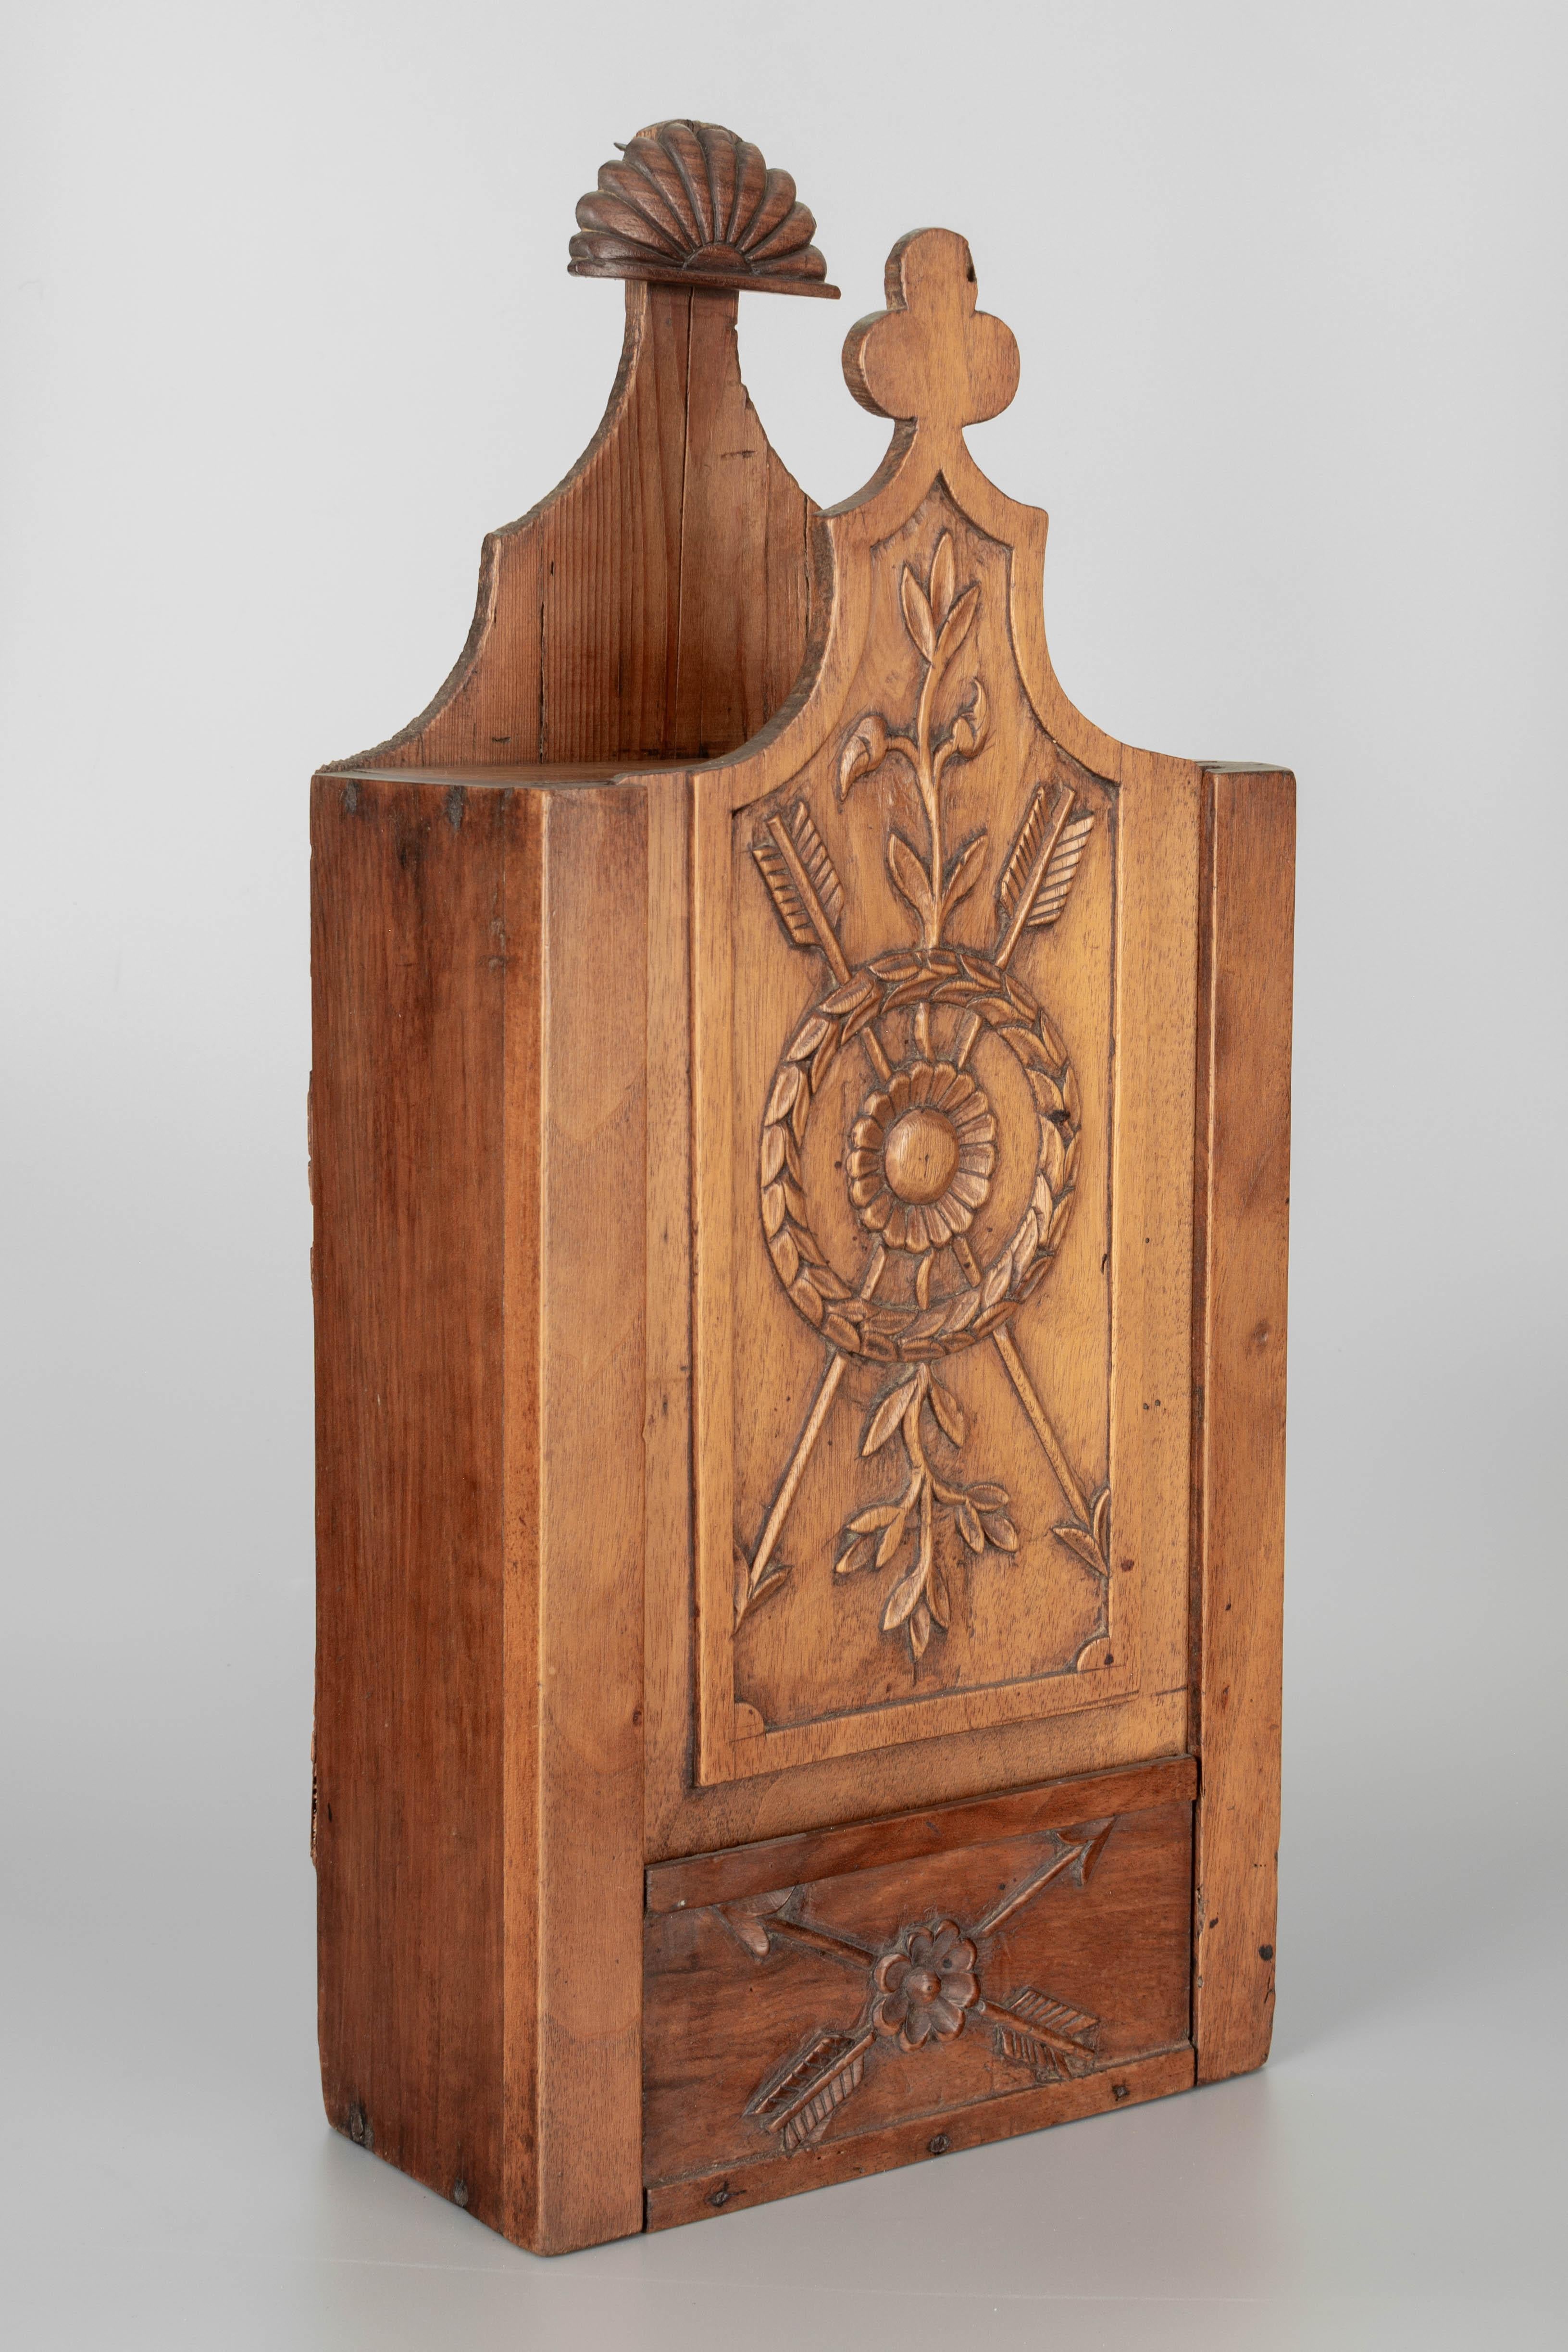 Eine französische provenzalische Fariniere aus dem 19. Jahrhundert, eine dekorative Kiste aus Nussbaumholz mit feinem handgeschnitztem Dekor. Gewachste Patina. Dieser schön gearbeitete Haushaltsgegenstand wurde üblicherweise als Hochzeitsgeschenk